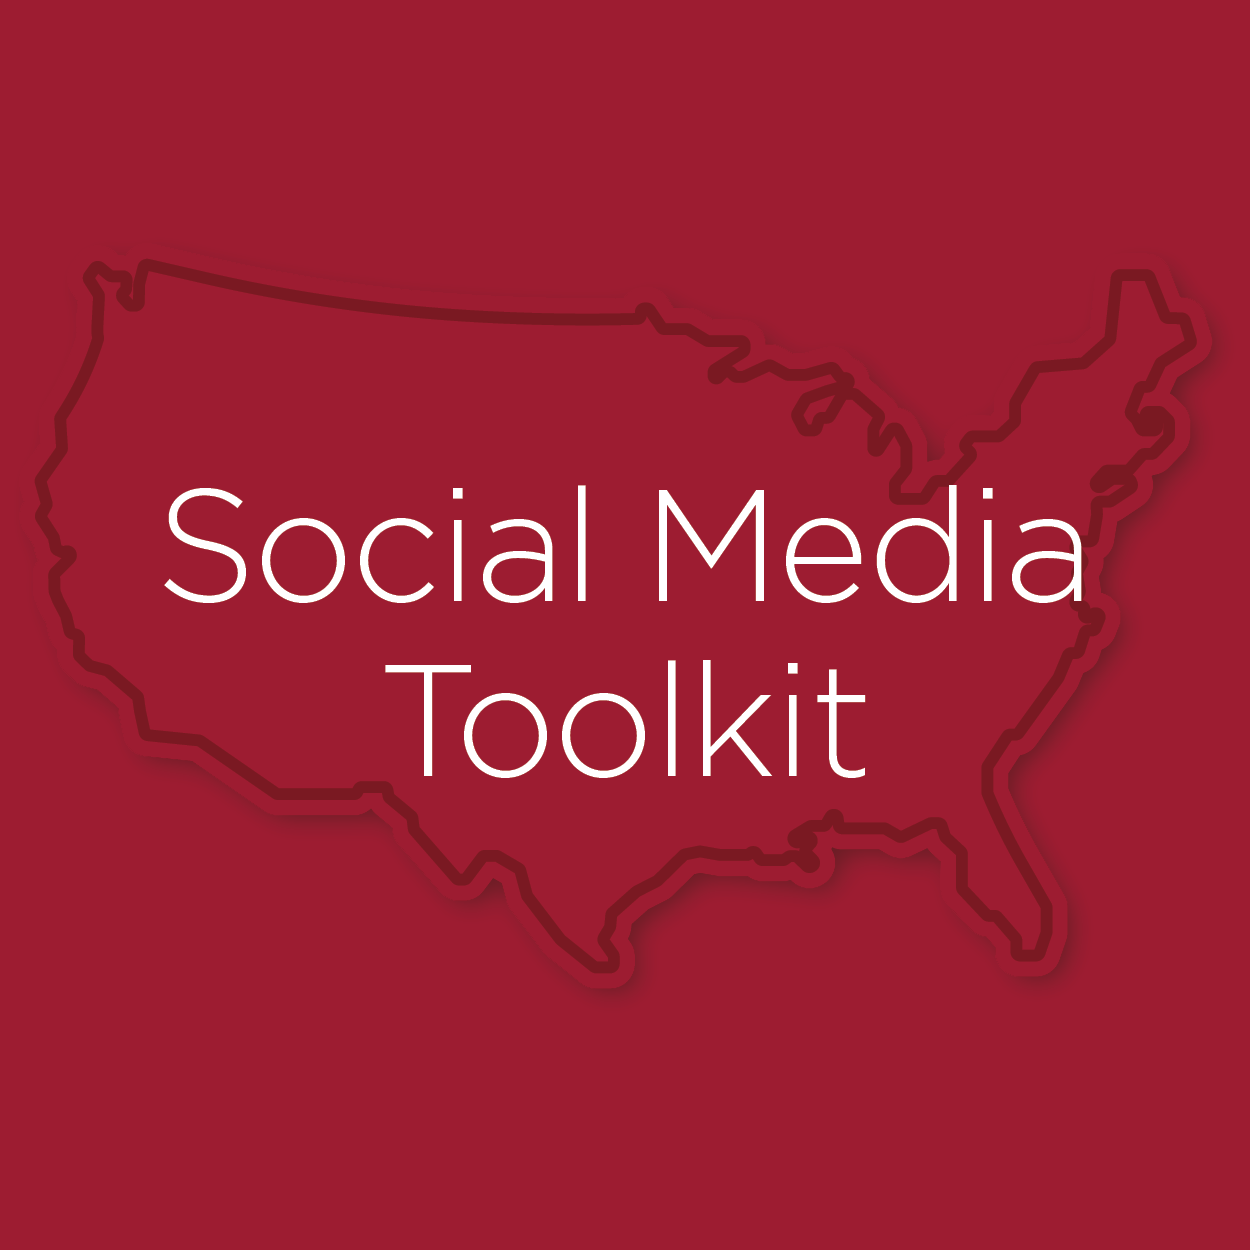 Social Media Toolkit